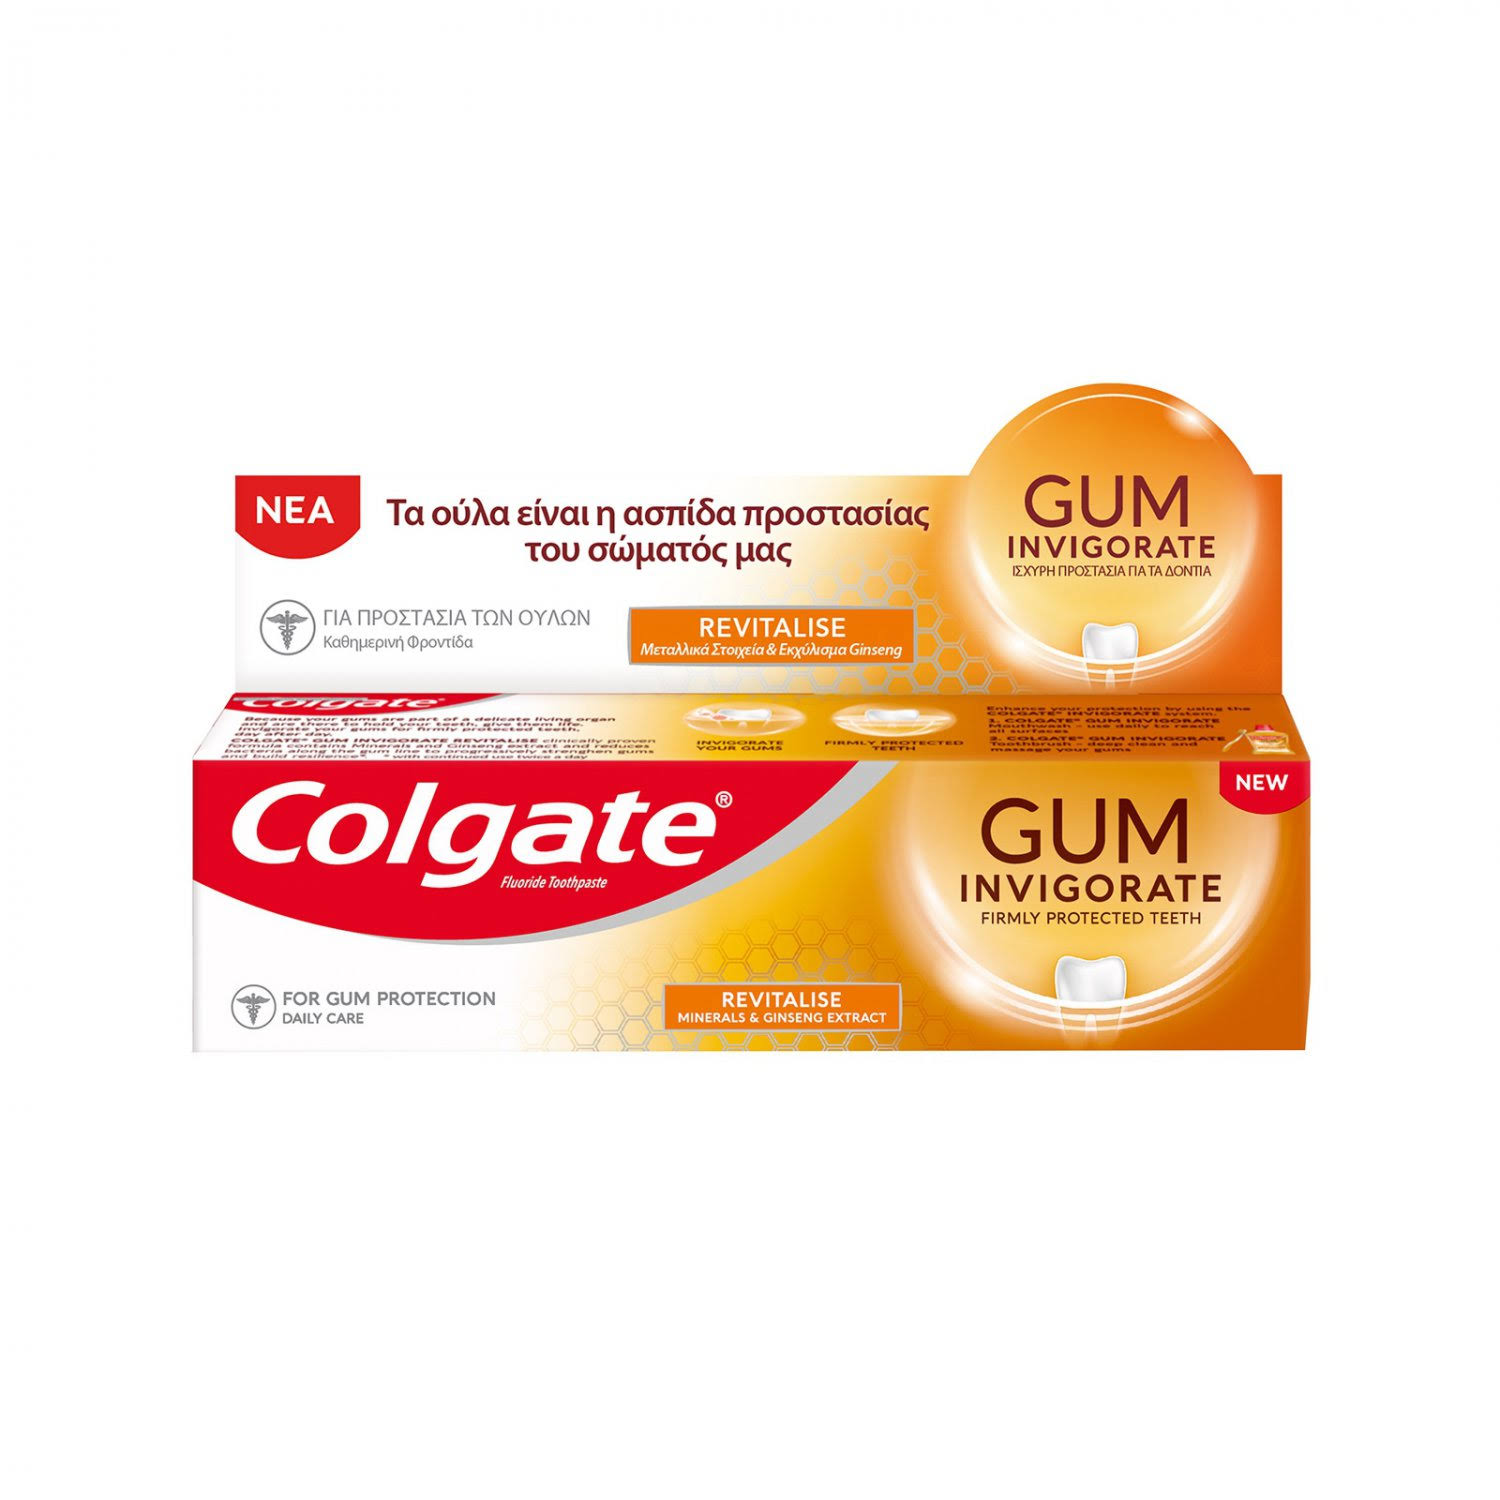 Colgate Toothpaste Gum Revitalise